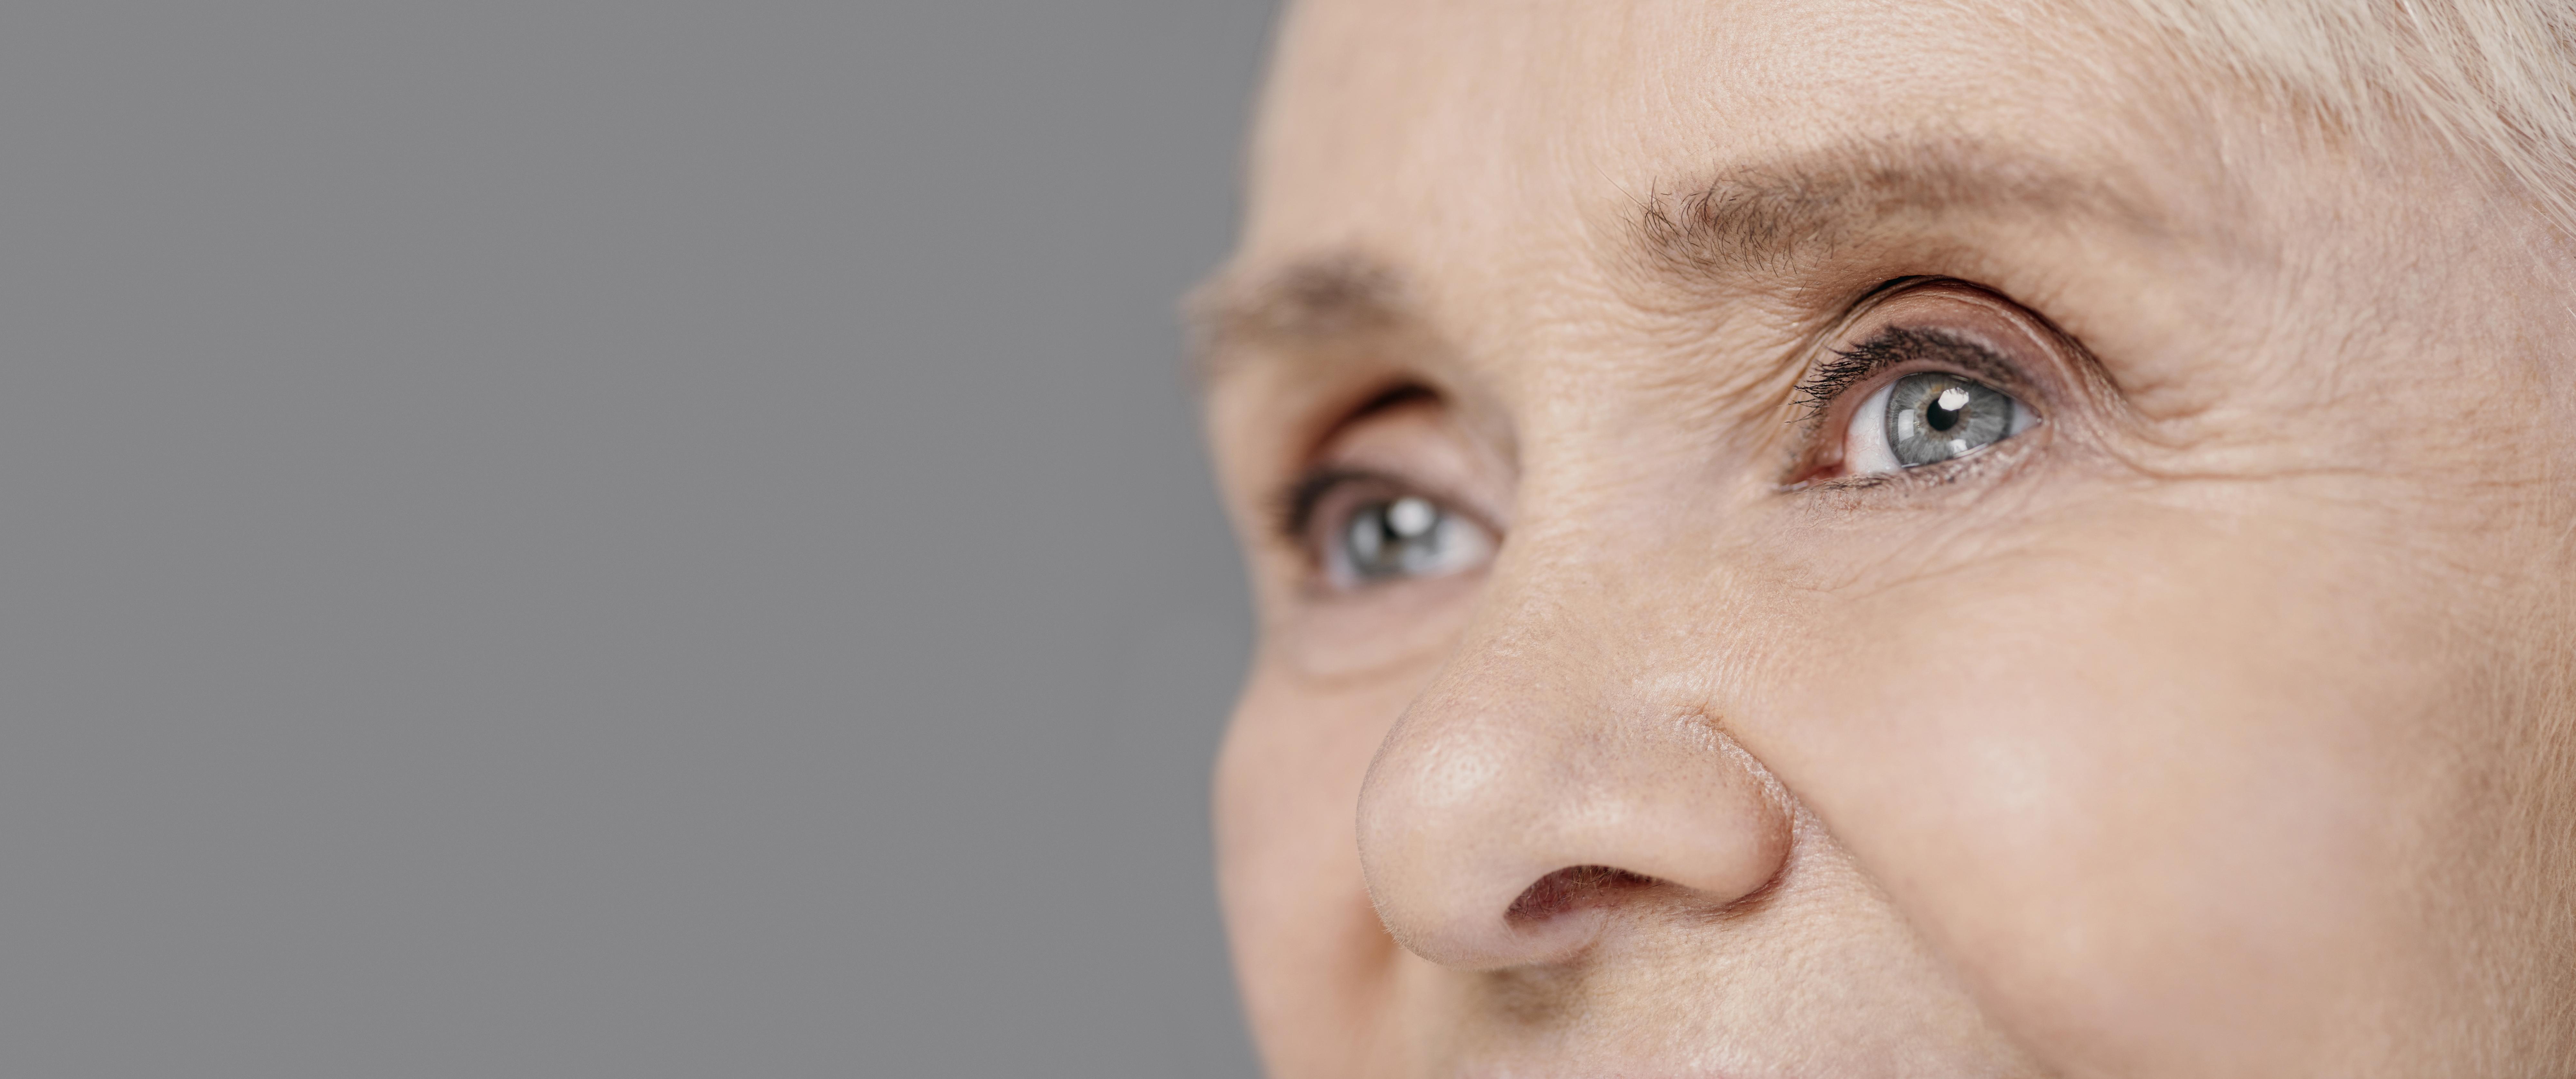 Мордочка сморщенная старушечья а глазки живые. Пожилая женщина глаза крупно. Глаза пожилой женщины фото.